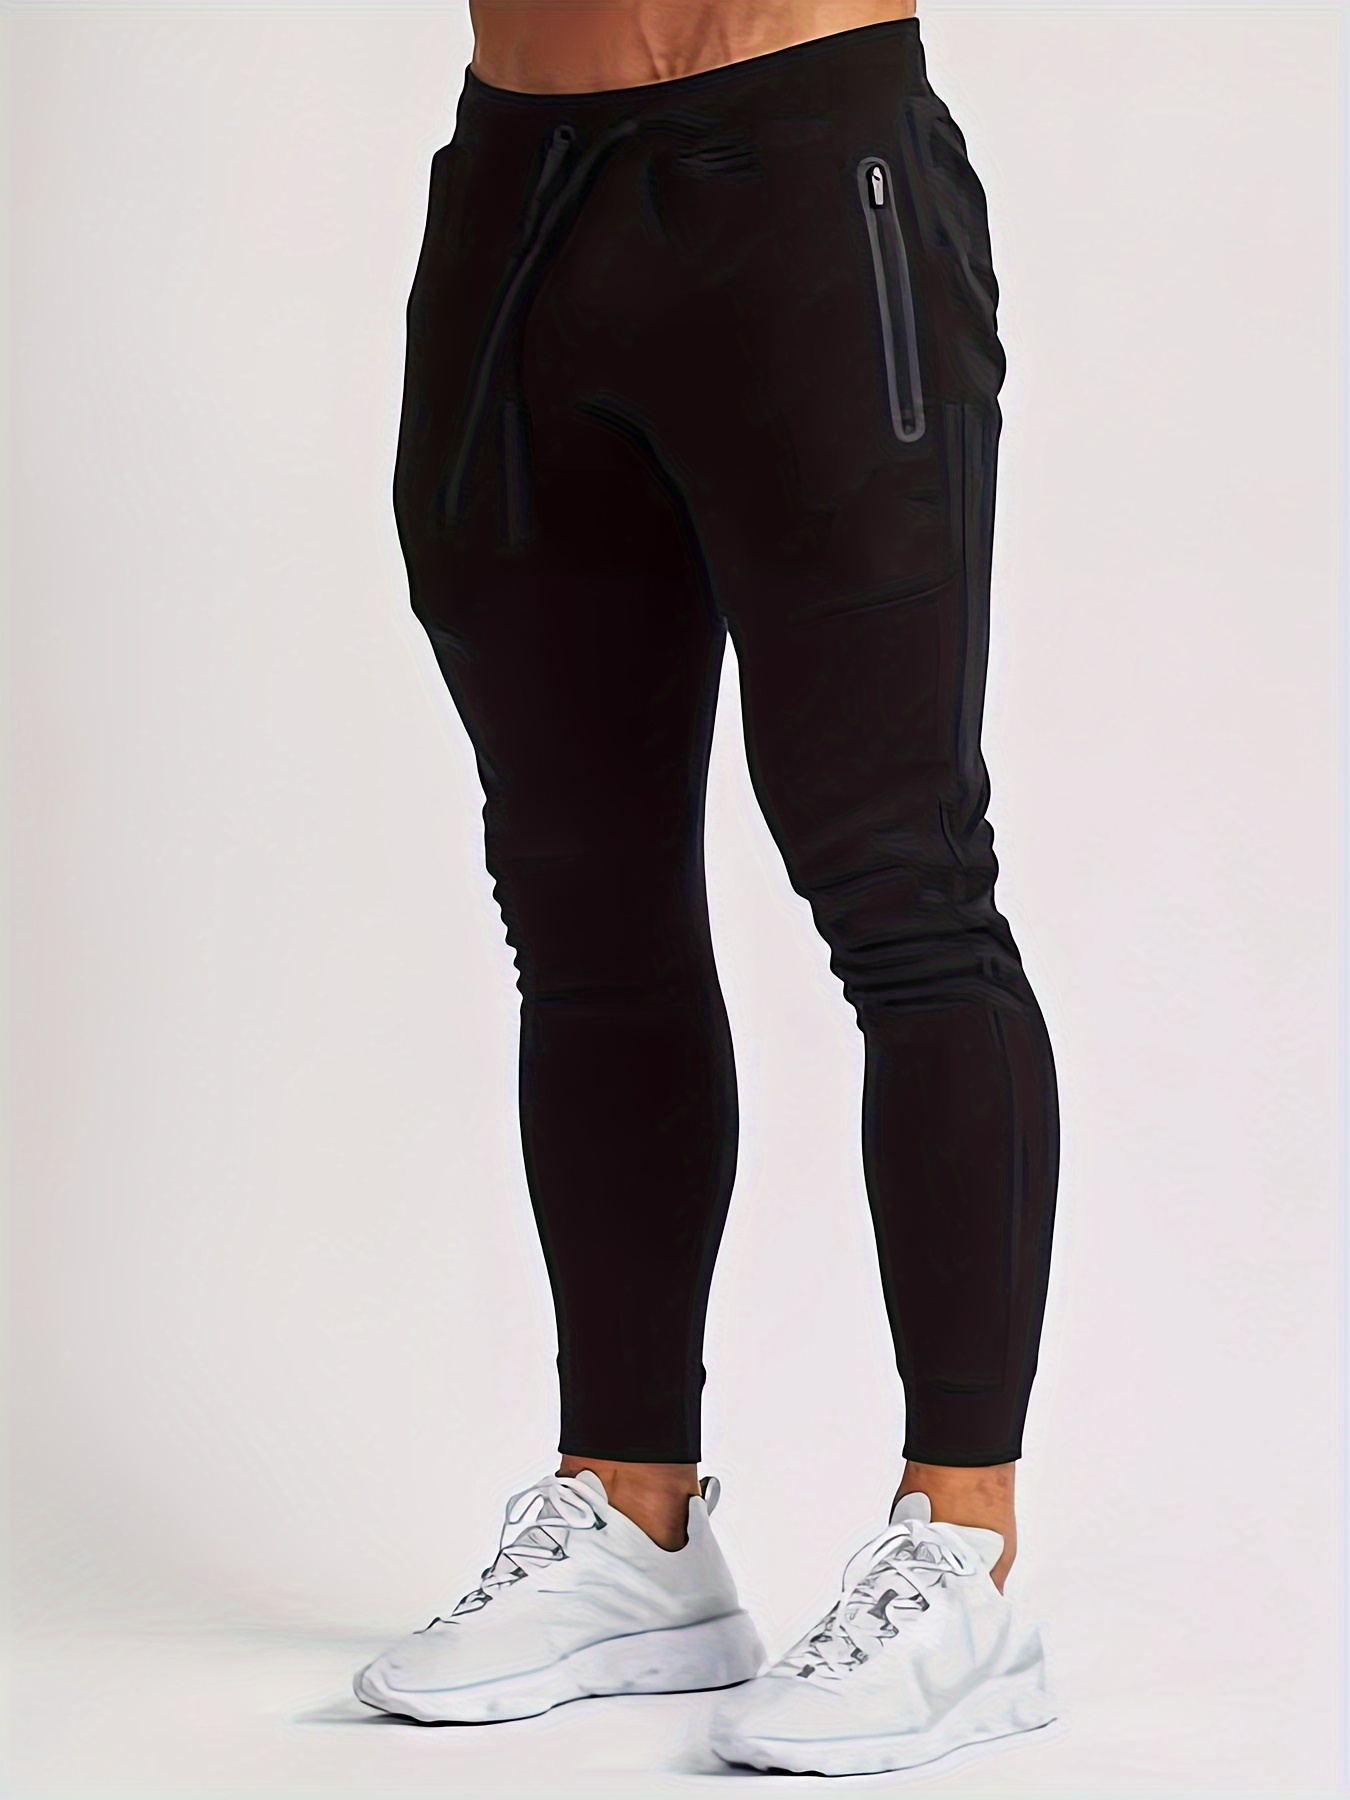 THE GYM PEOPLE - Pantalones deportivos ajustados para mujer, ligeros, para  entrenamiento, yoga, correr y descanso